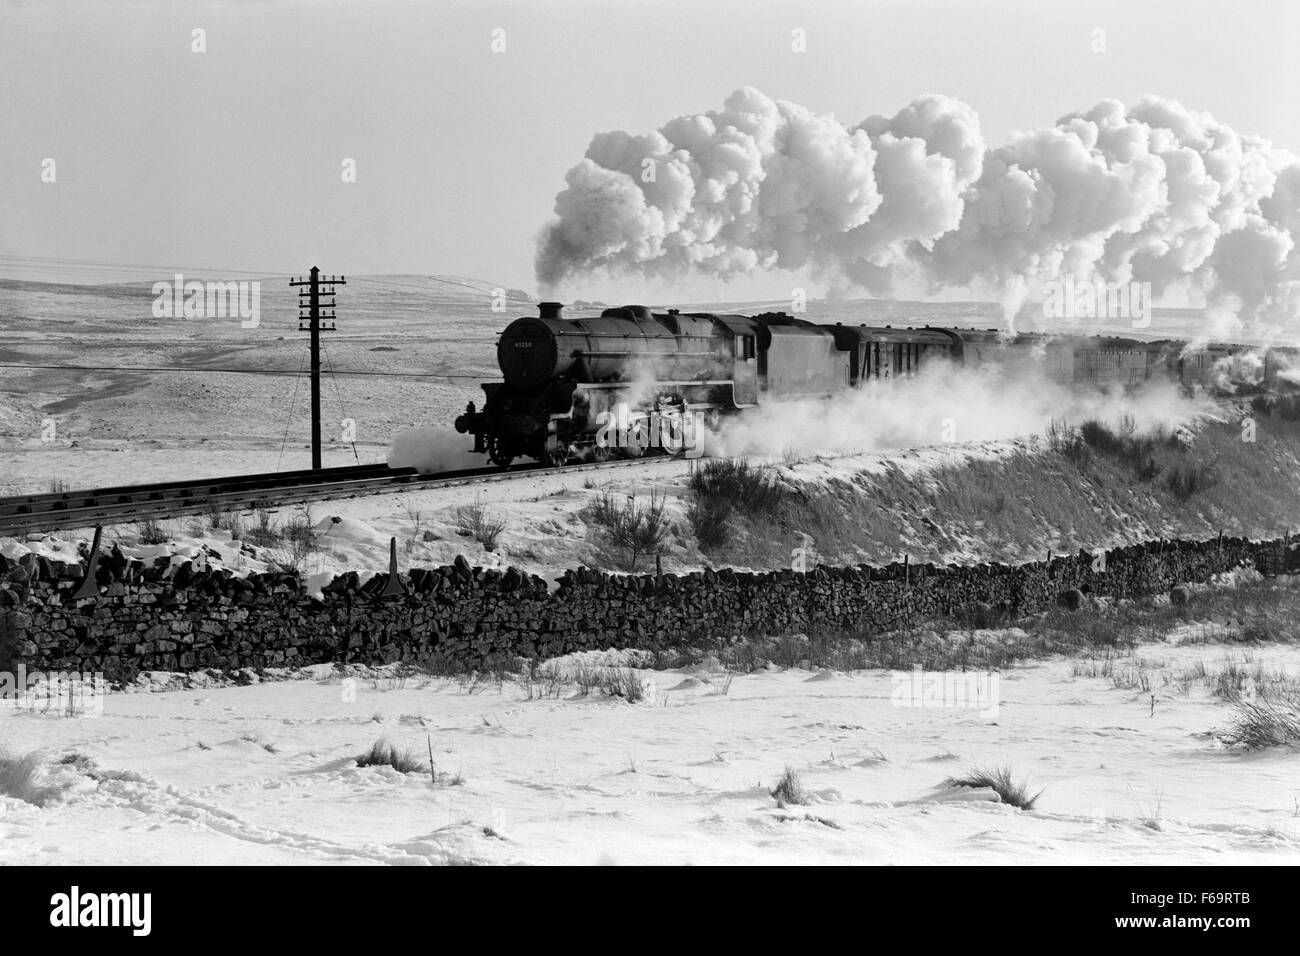 British Rail d'origine numéro 45258 loco de vapeur transporte un train de marchandises à travers beaucoup de neige dans le nord de l'angleterre uk 1960 Banque D'Images